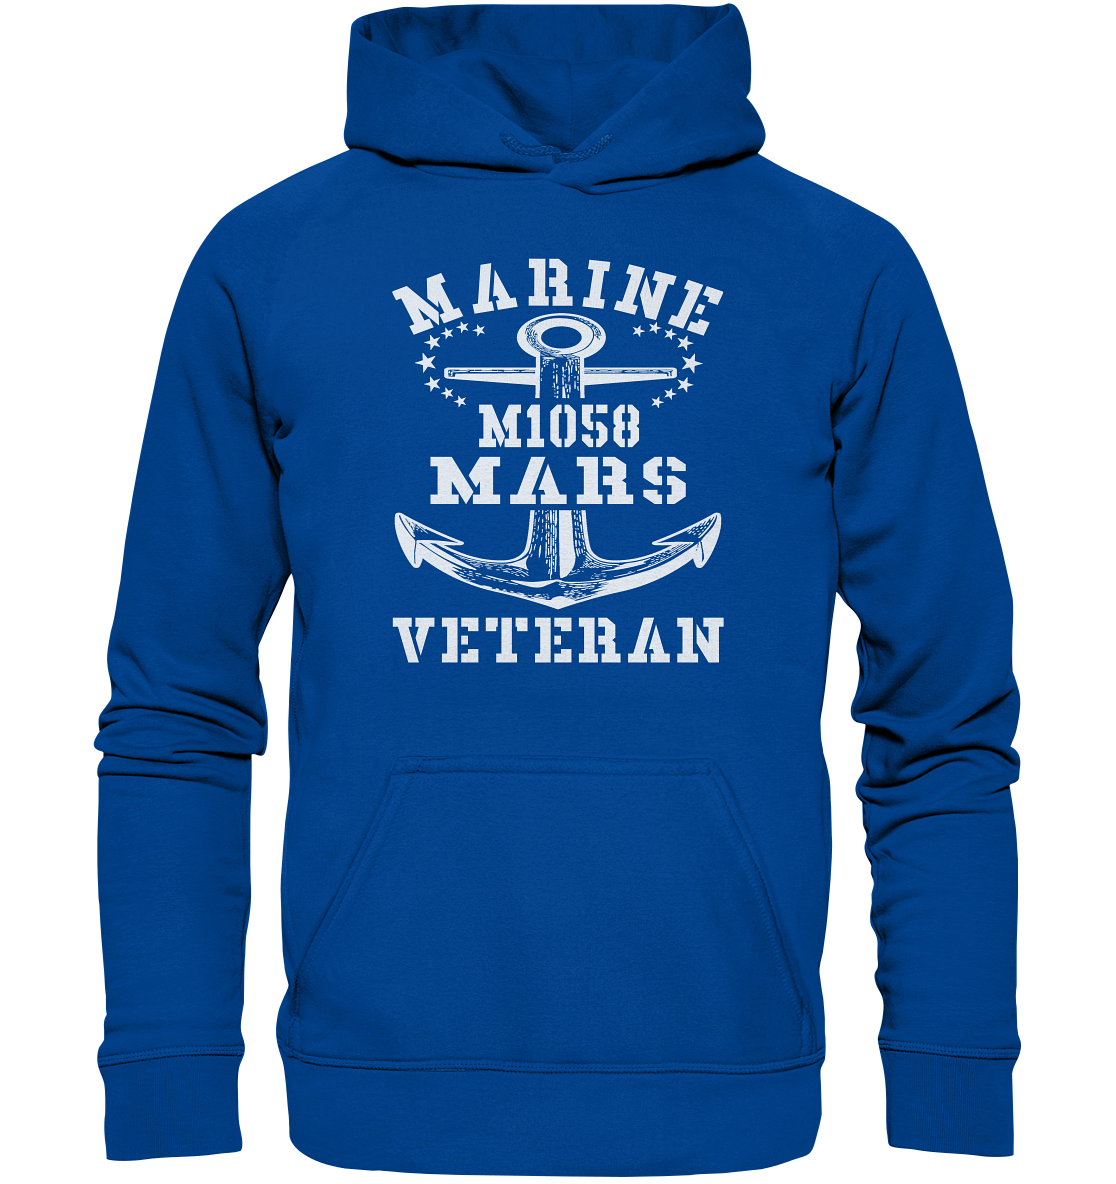 SM-Boot M1058 MARS Marine Veteran - Basic Unisex Hoodie